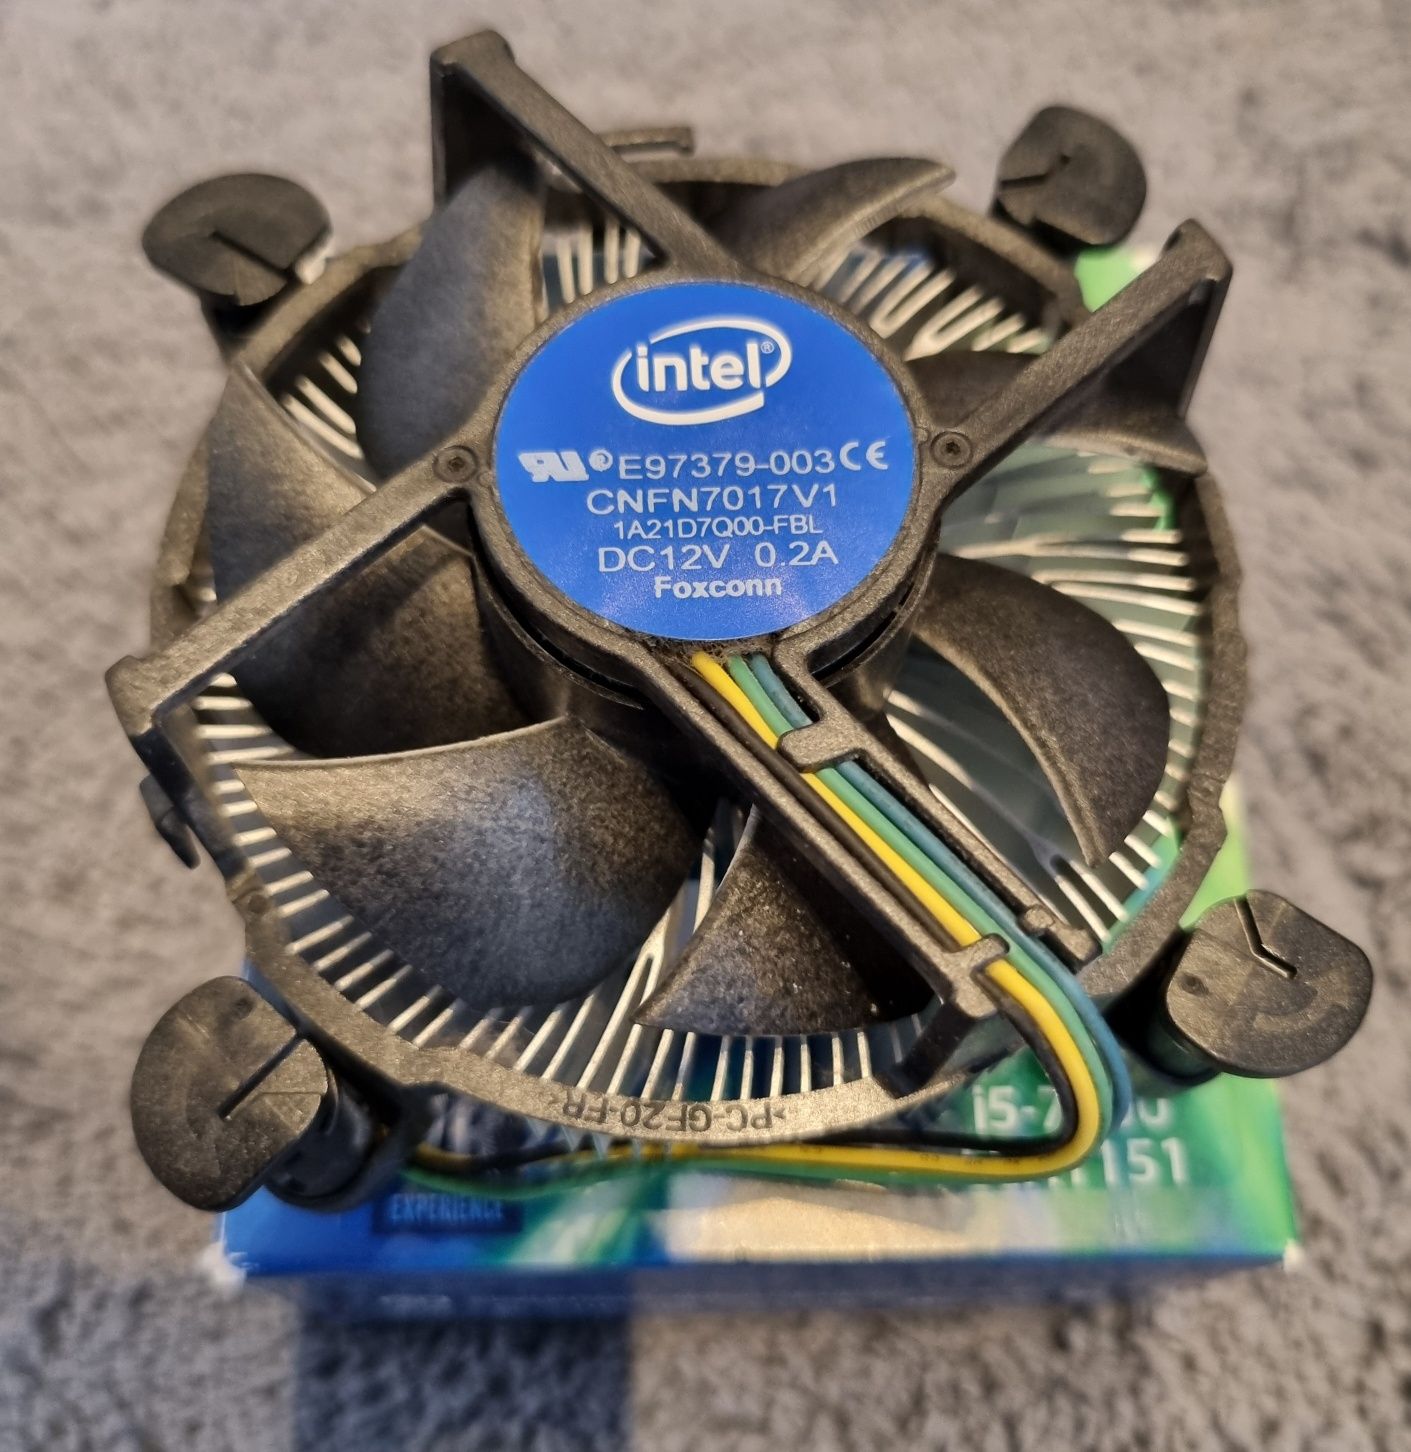 Procesor Intel Core i5-7500 3.4GHz+ Chłodzenie